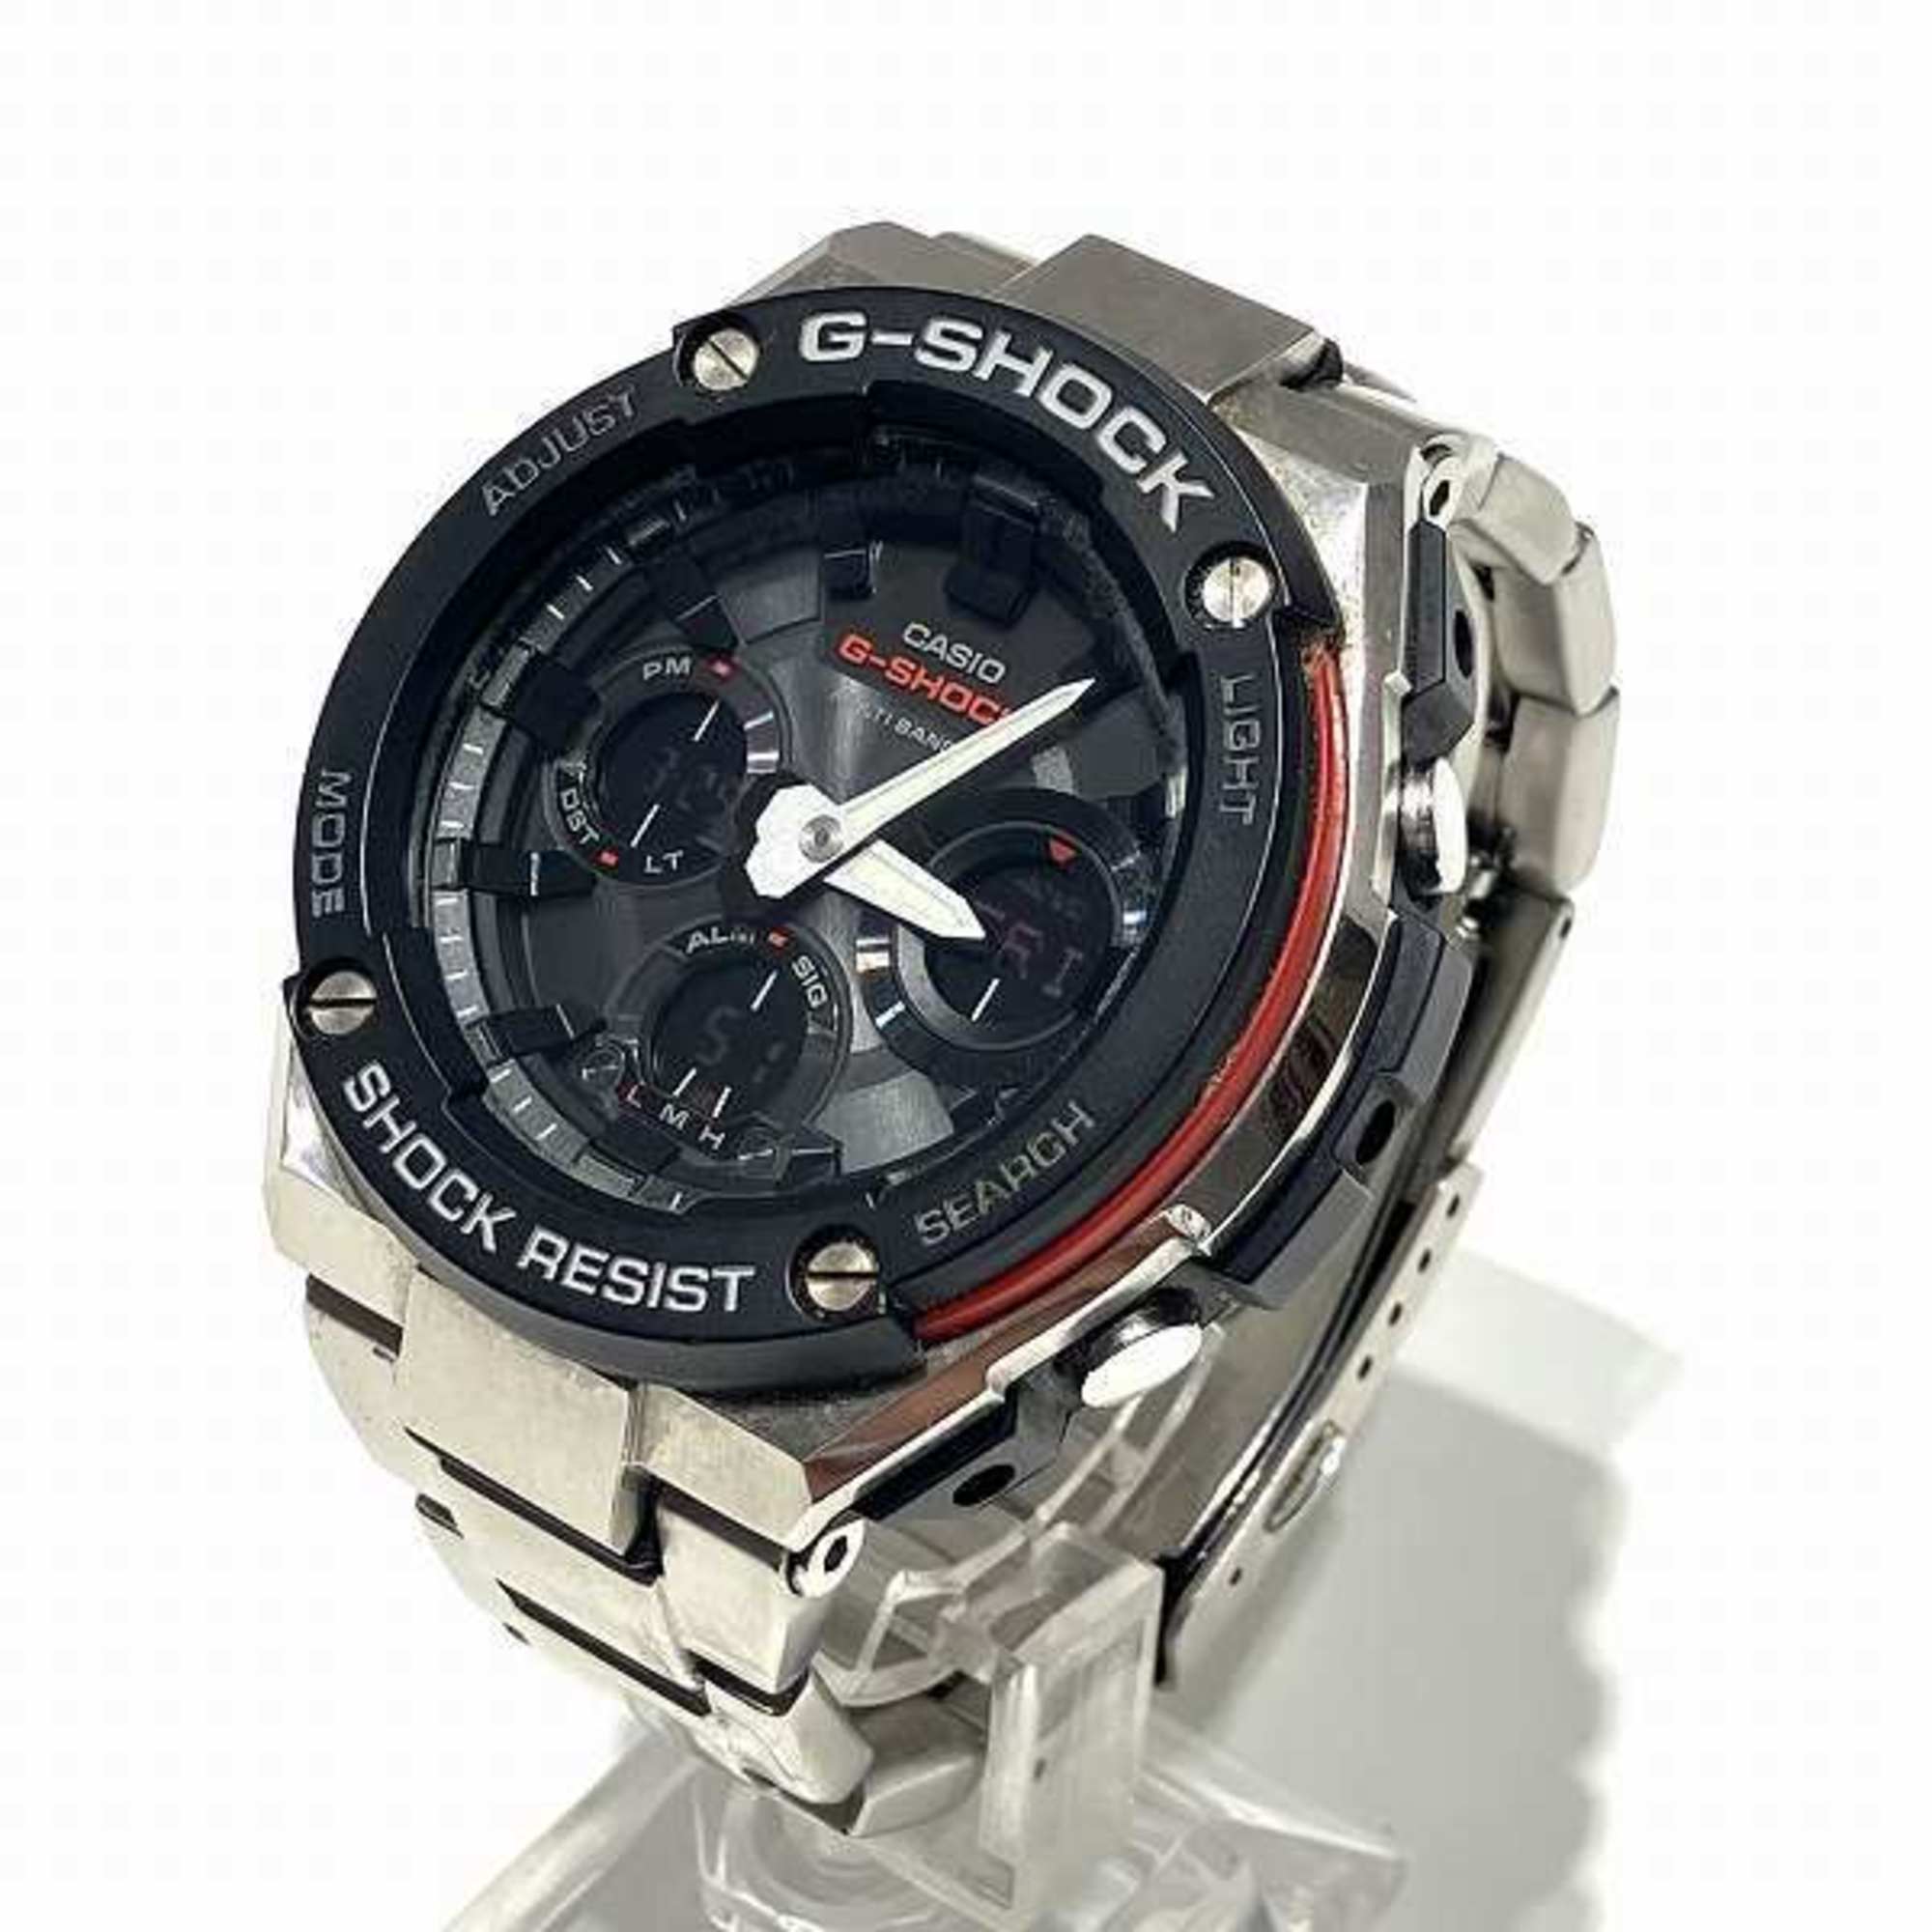 Casio G-Shock G-Steel GST-W100D Solar Tough Watch Men's